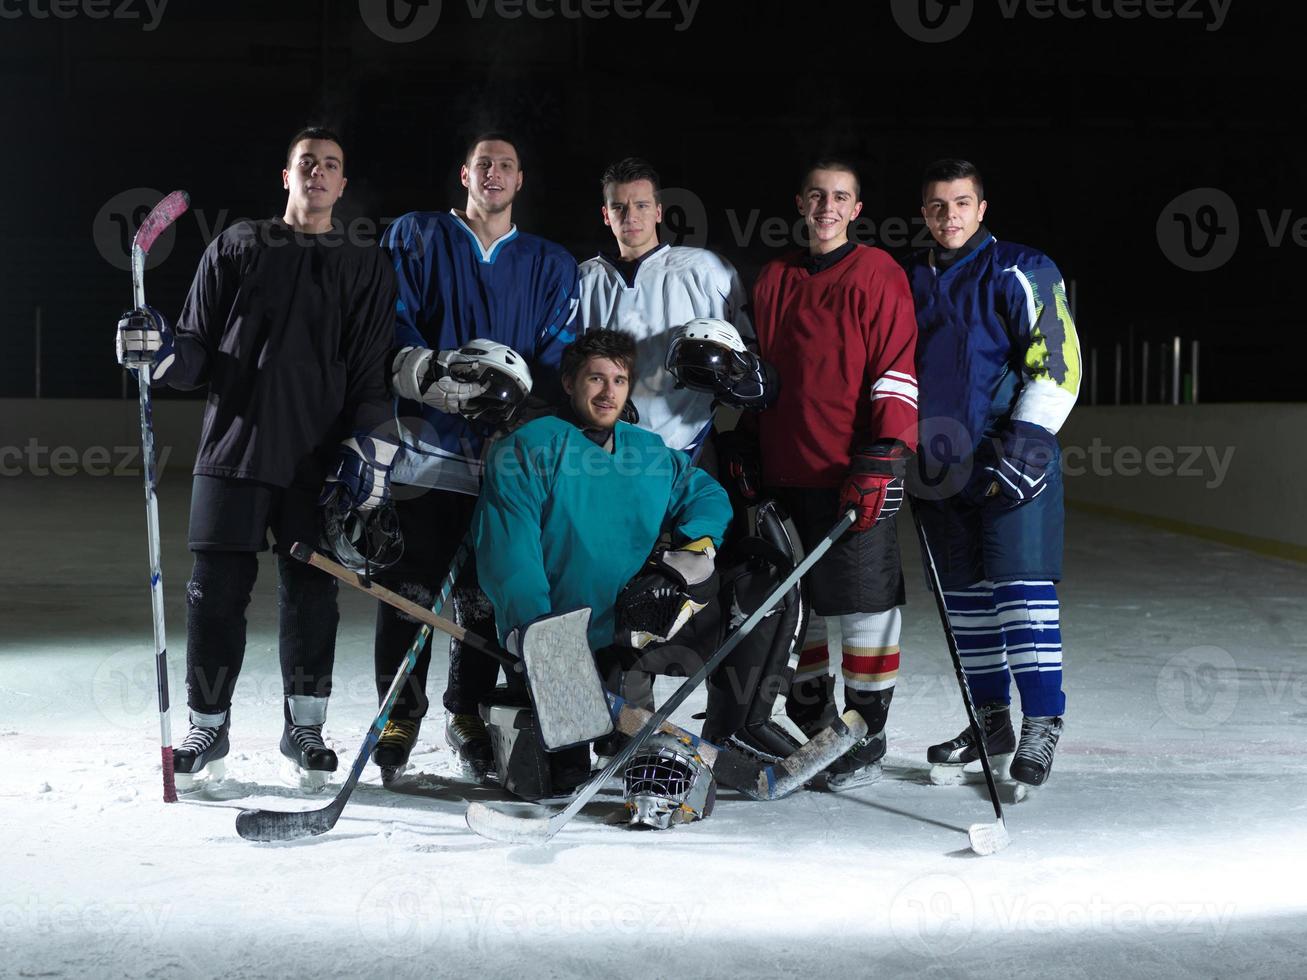 equipo de jugadores de hockey sobre hielo foto